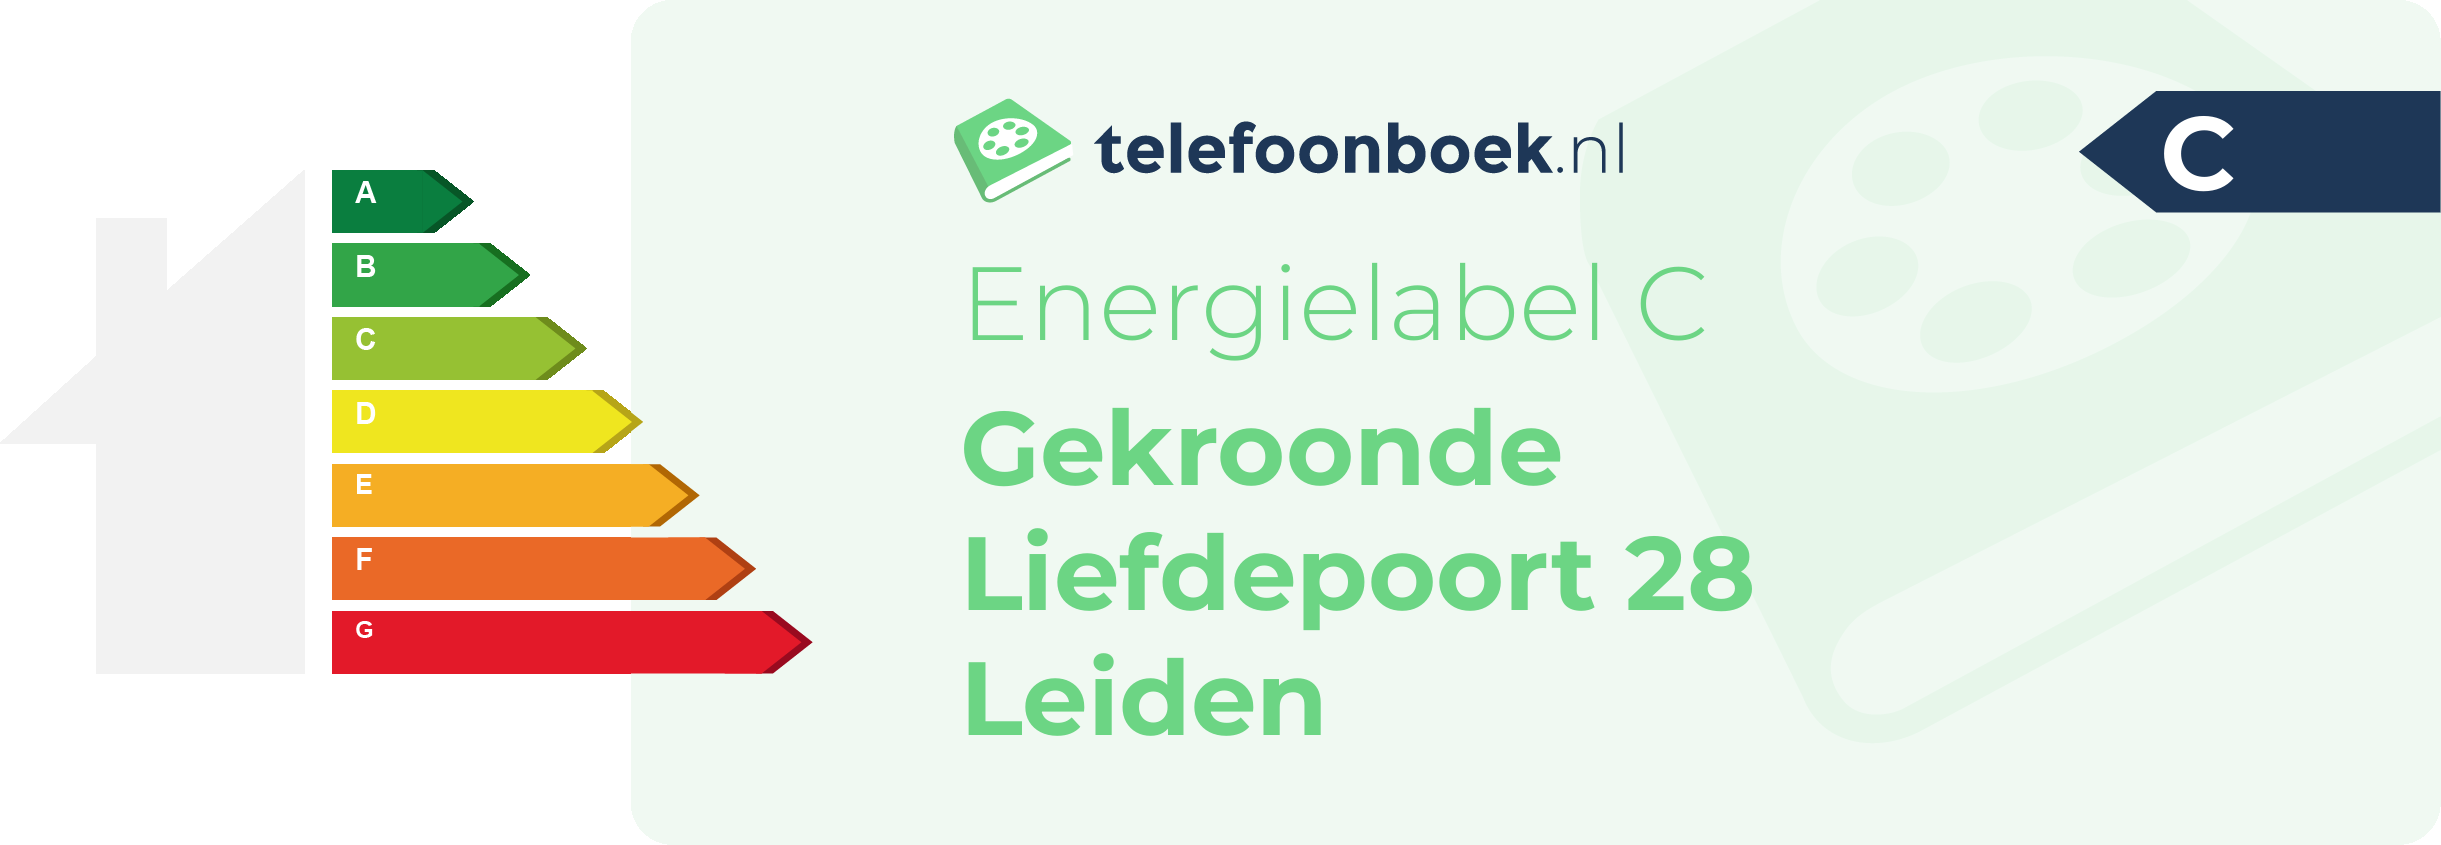 Energielabel Gekroonde Liefdepoort 28 Leiden